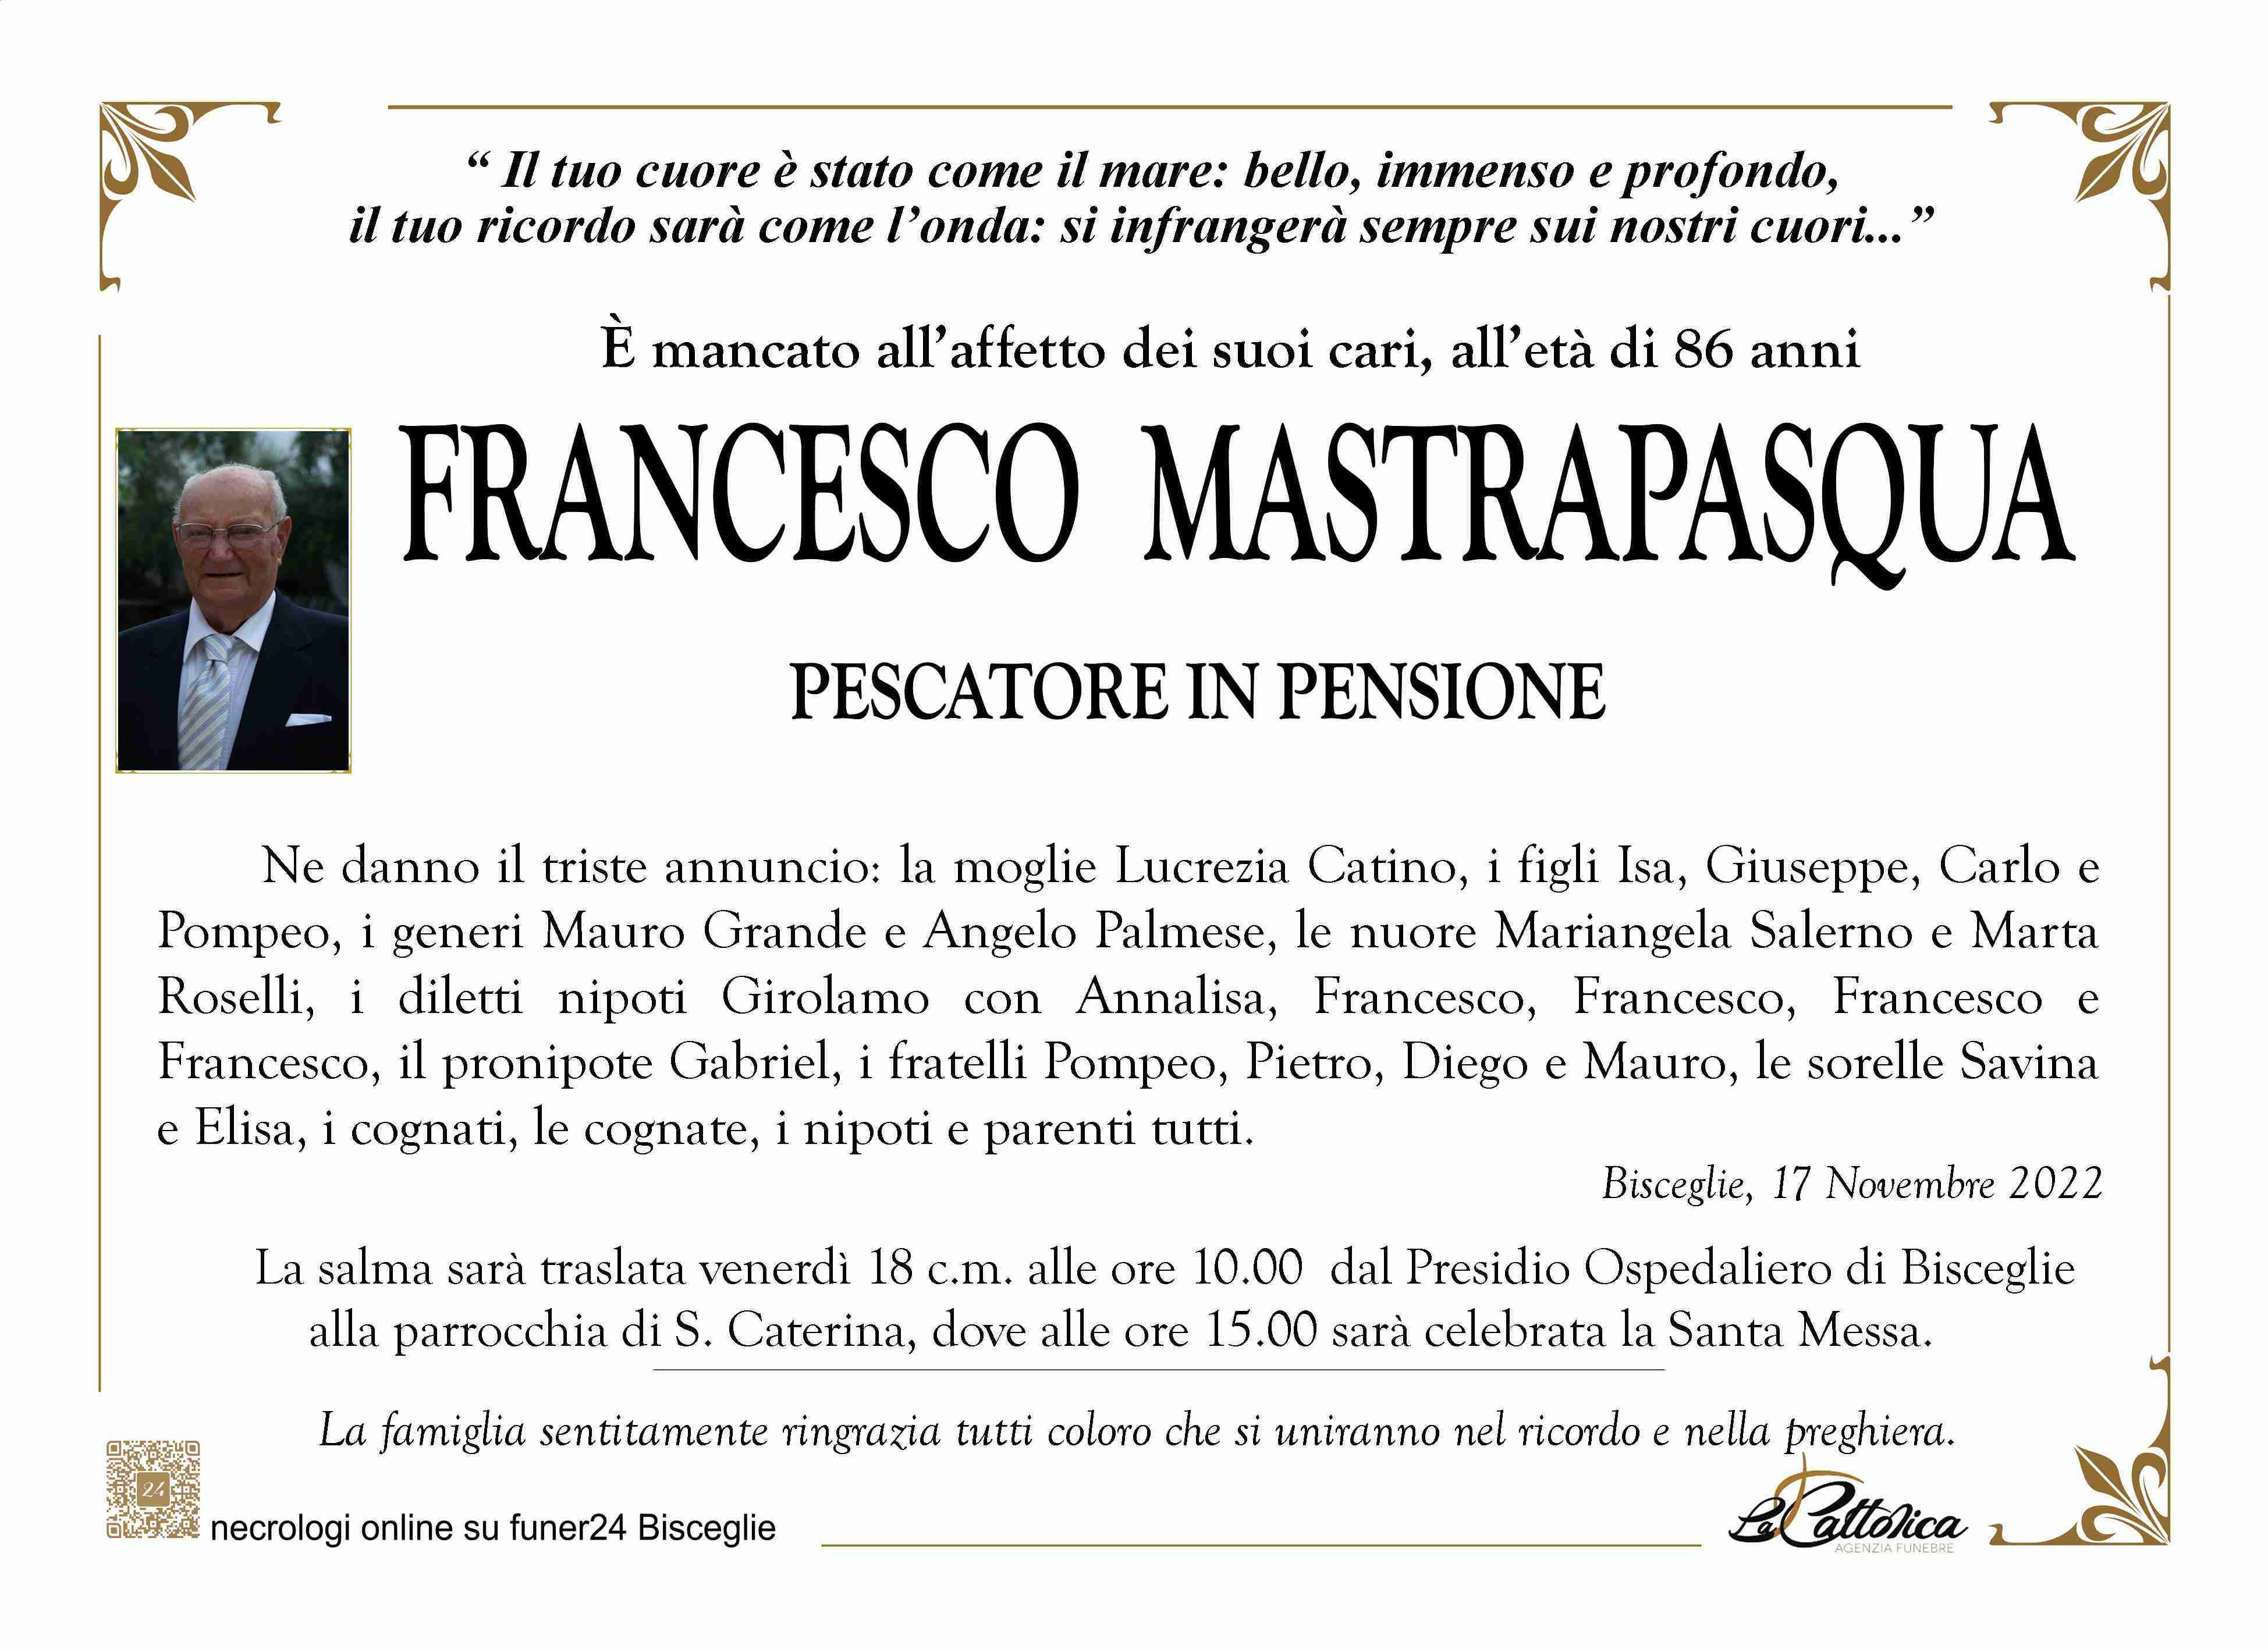 Francesco Mastrapasqua